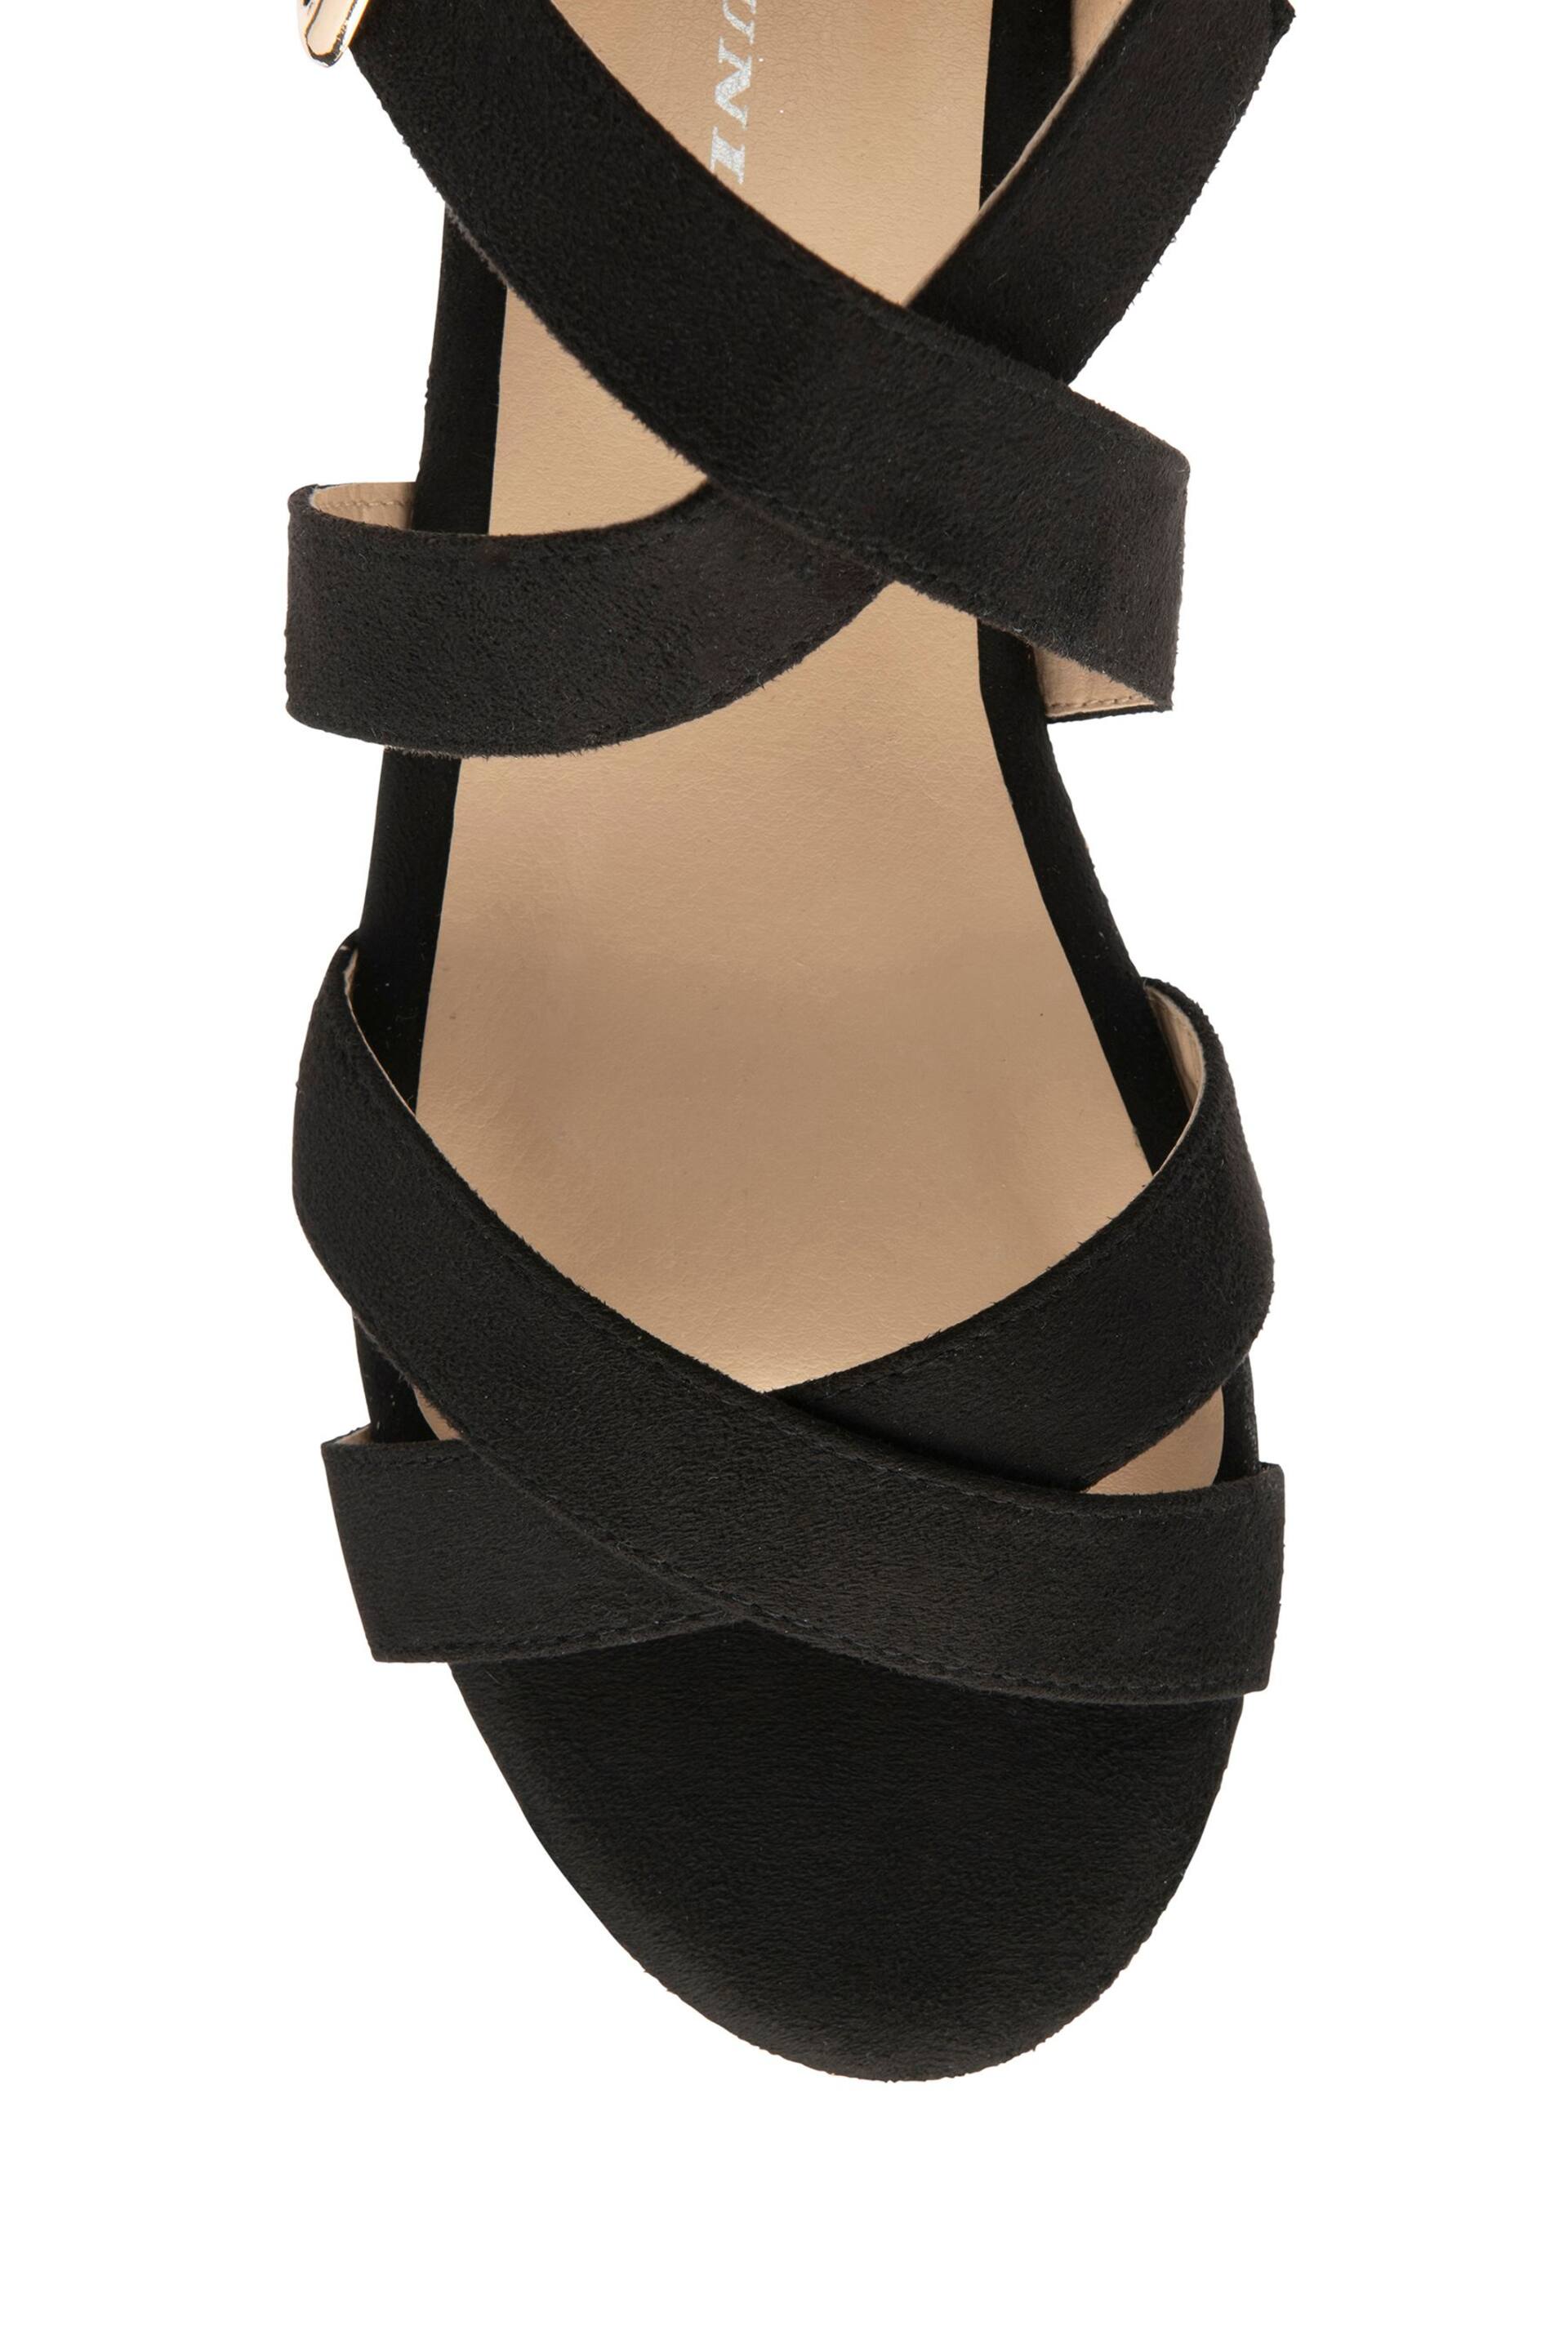 Dunlop Black Wedges Open Toe Sandals - Image 4 of 4